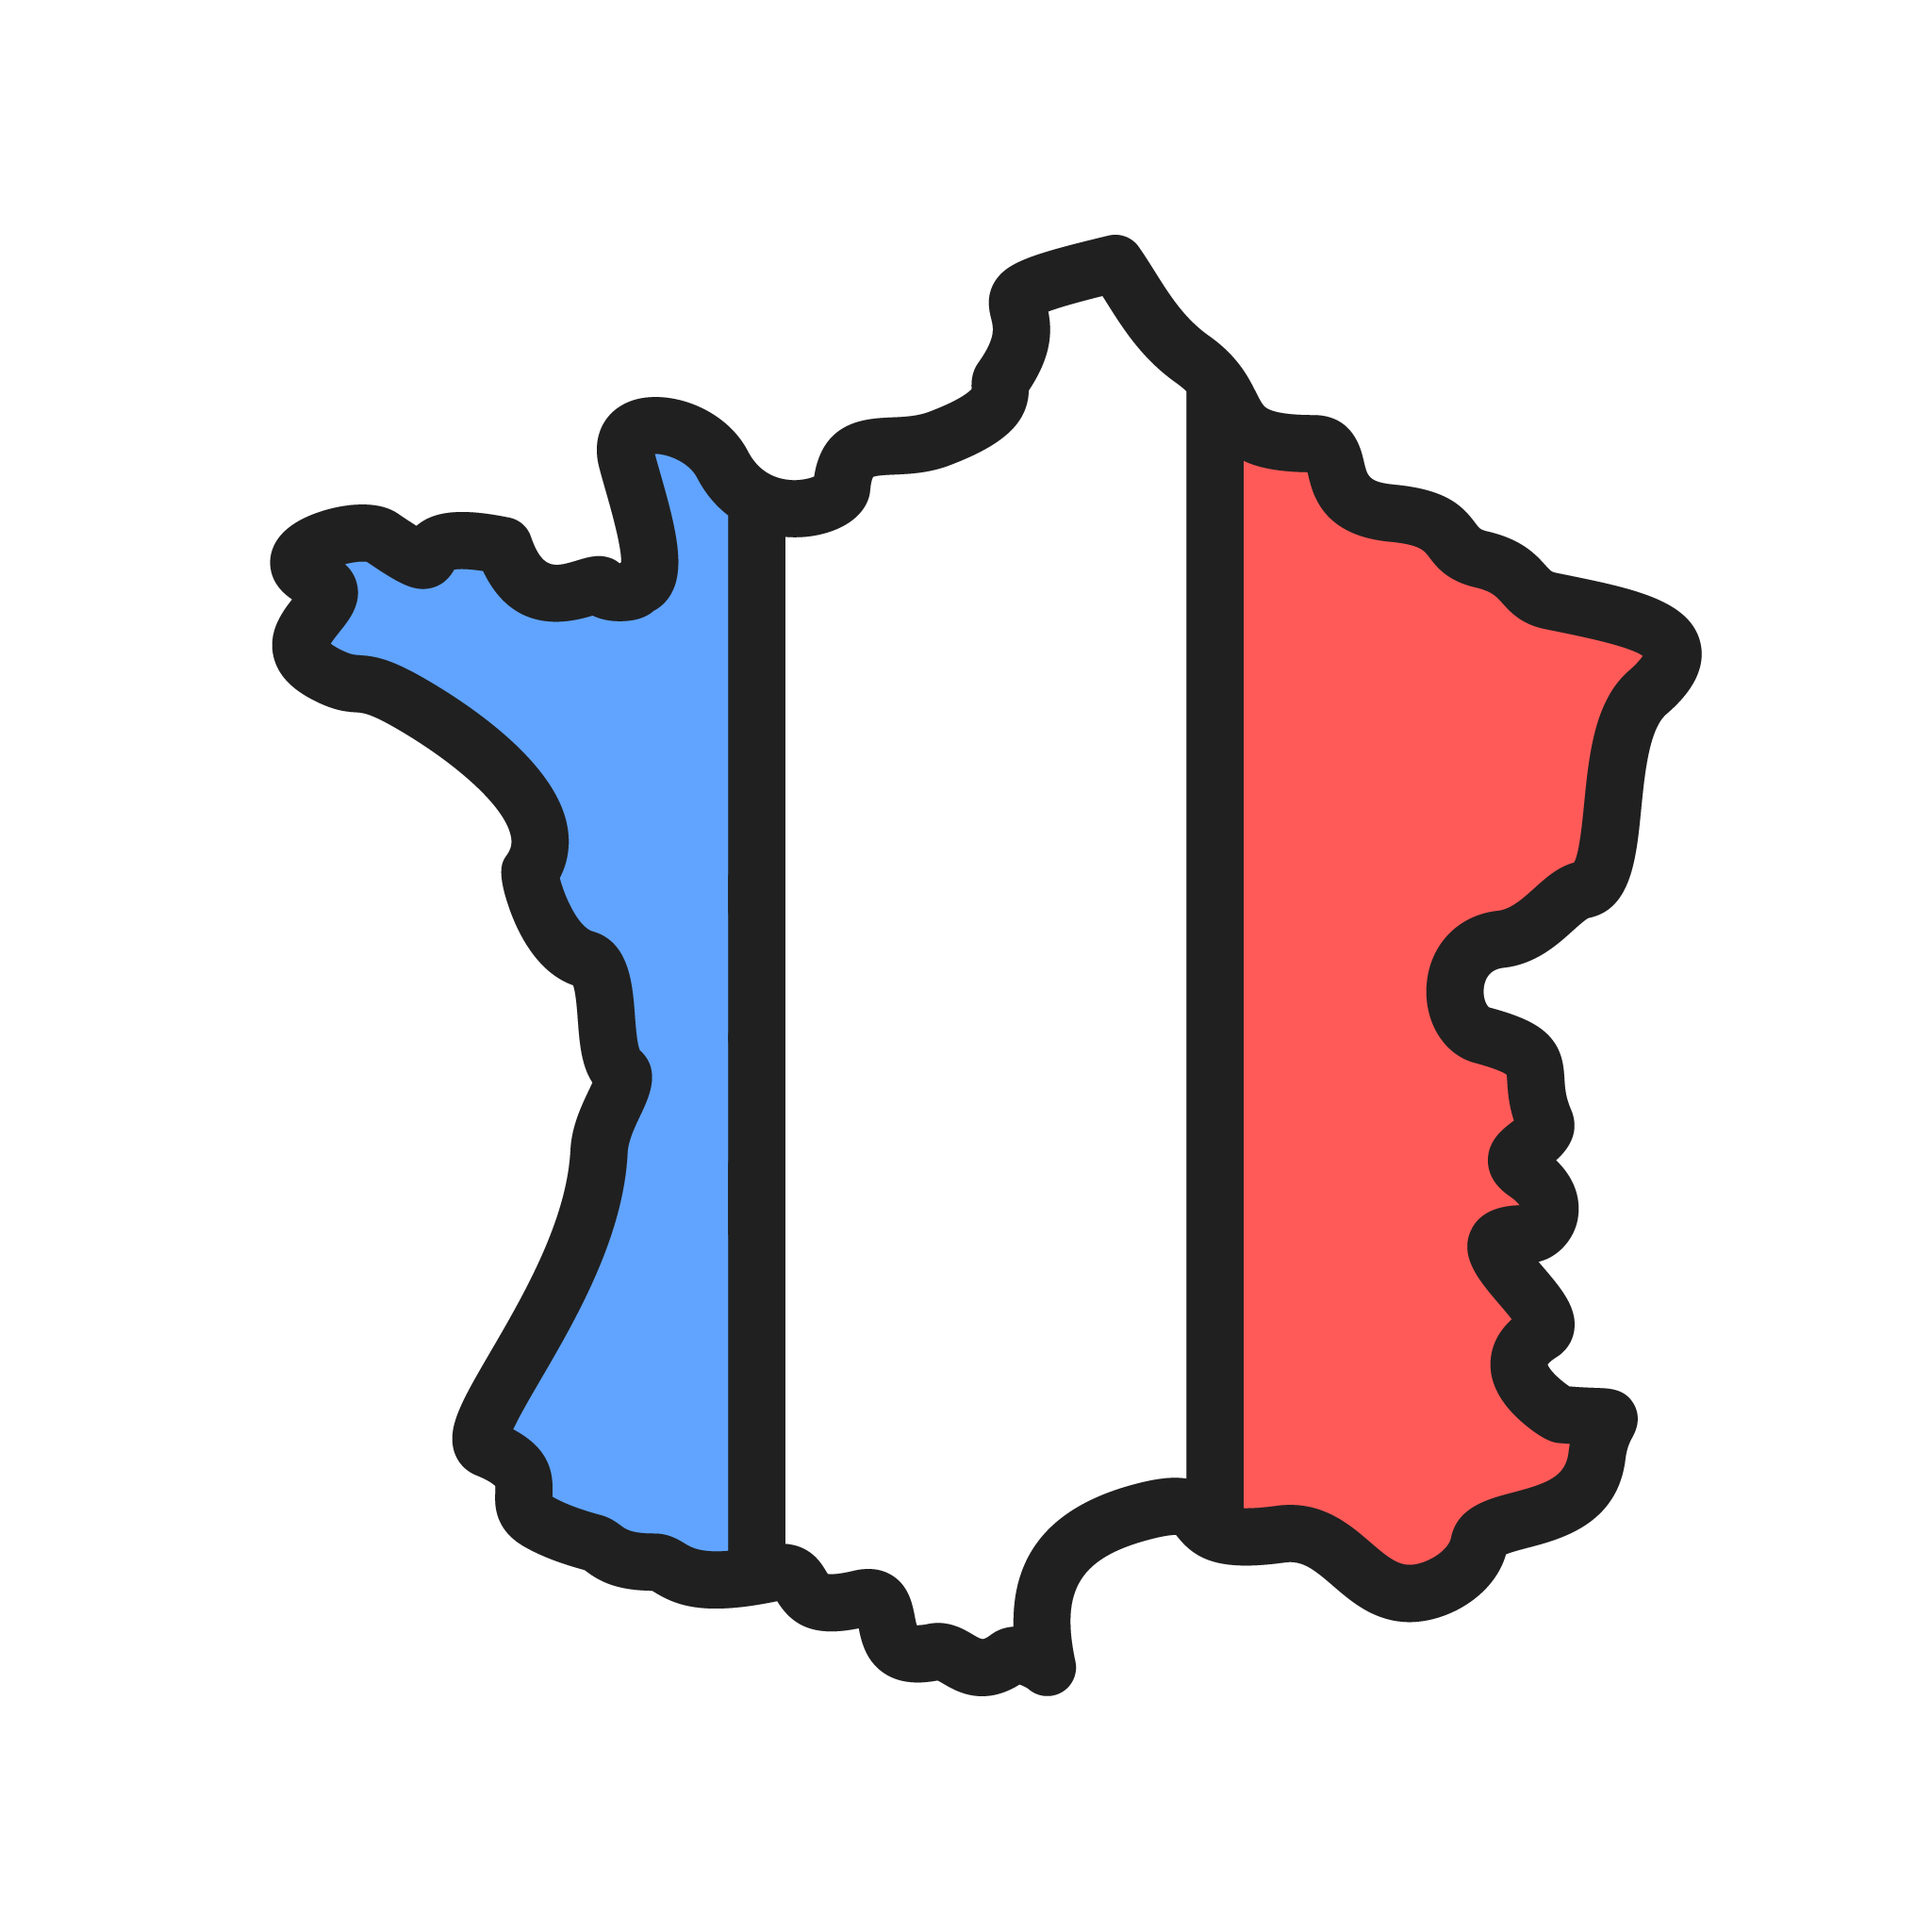 Logo de la France